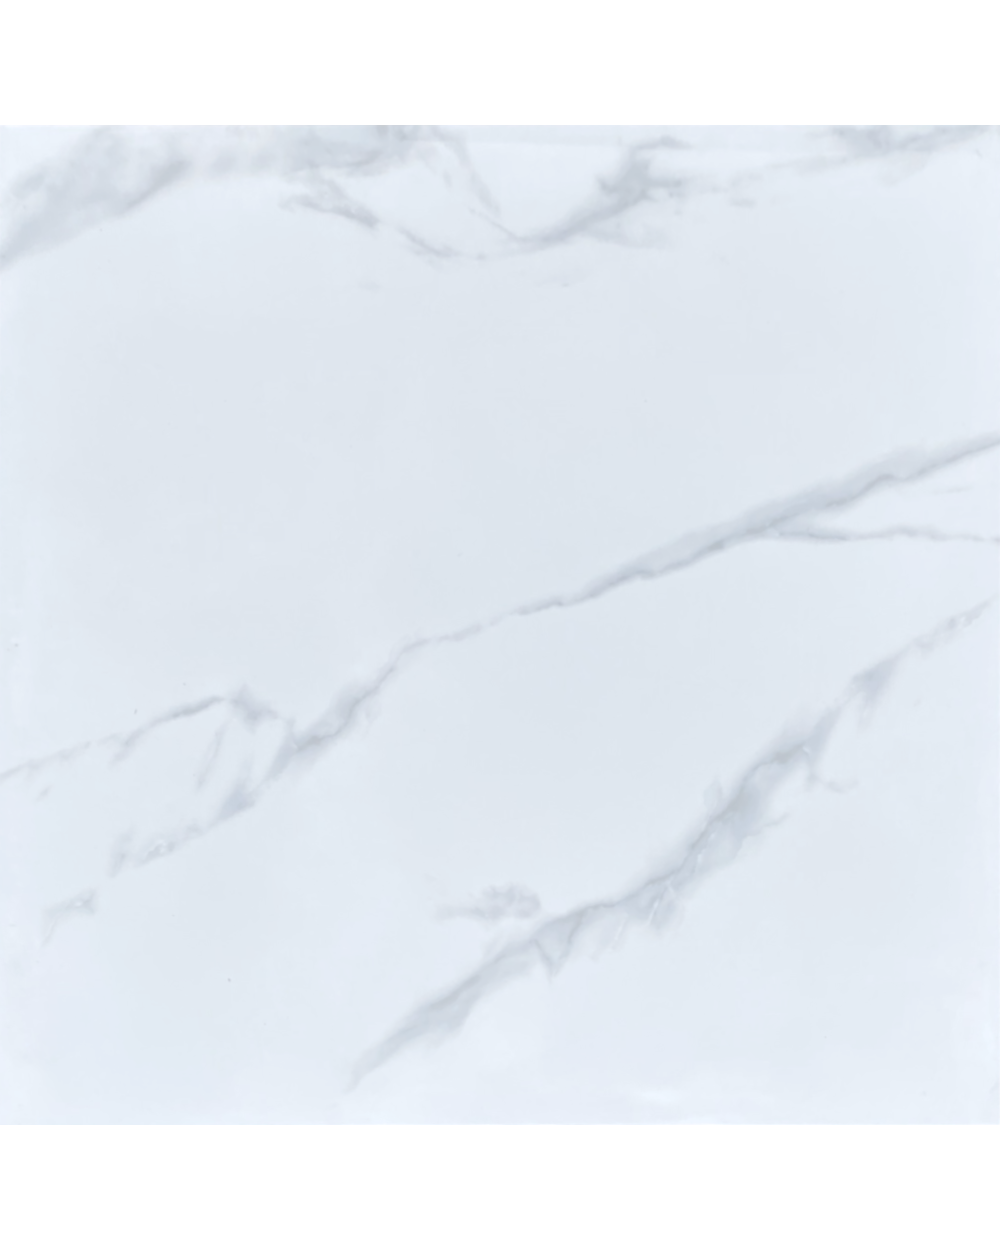 Arctic Carrara 60 x 60 cm Feinsteinzeug Bodenfliese Fliese Poliert 